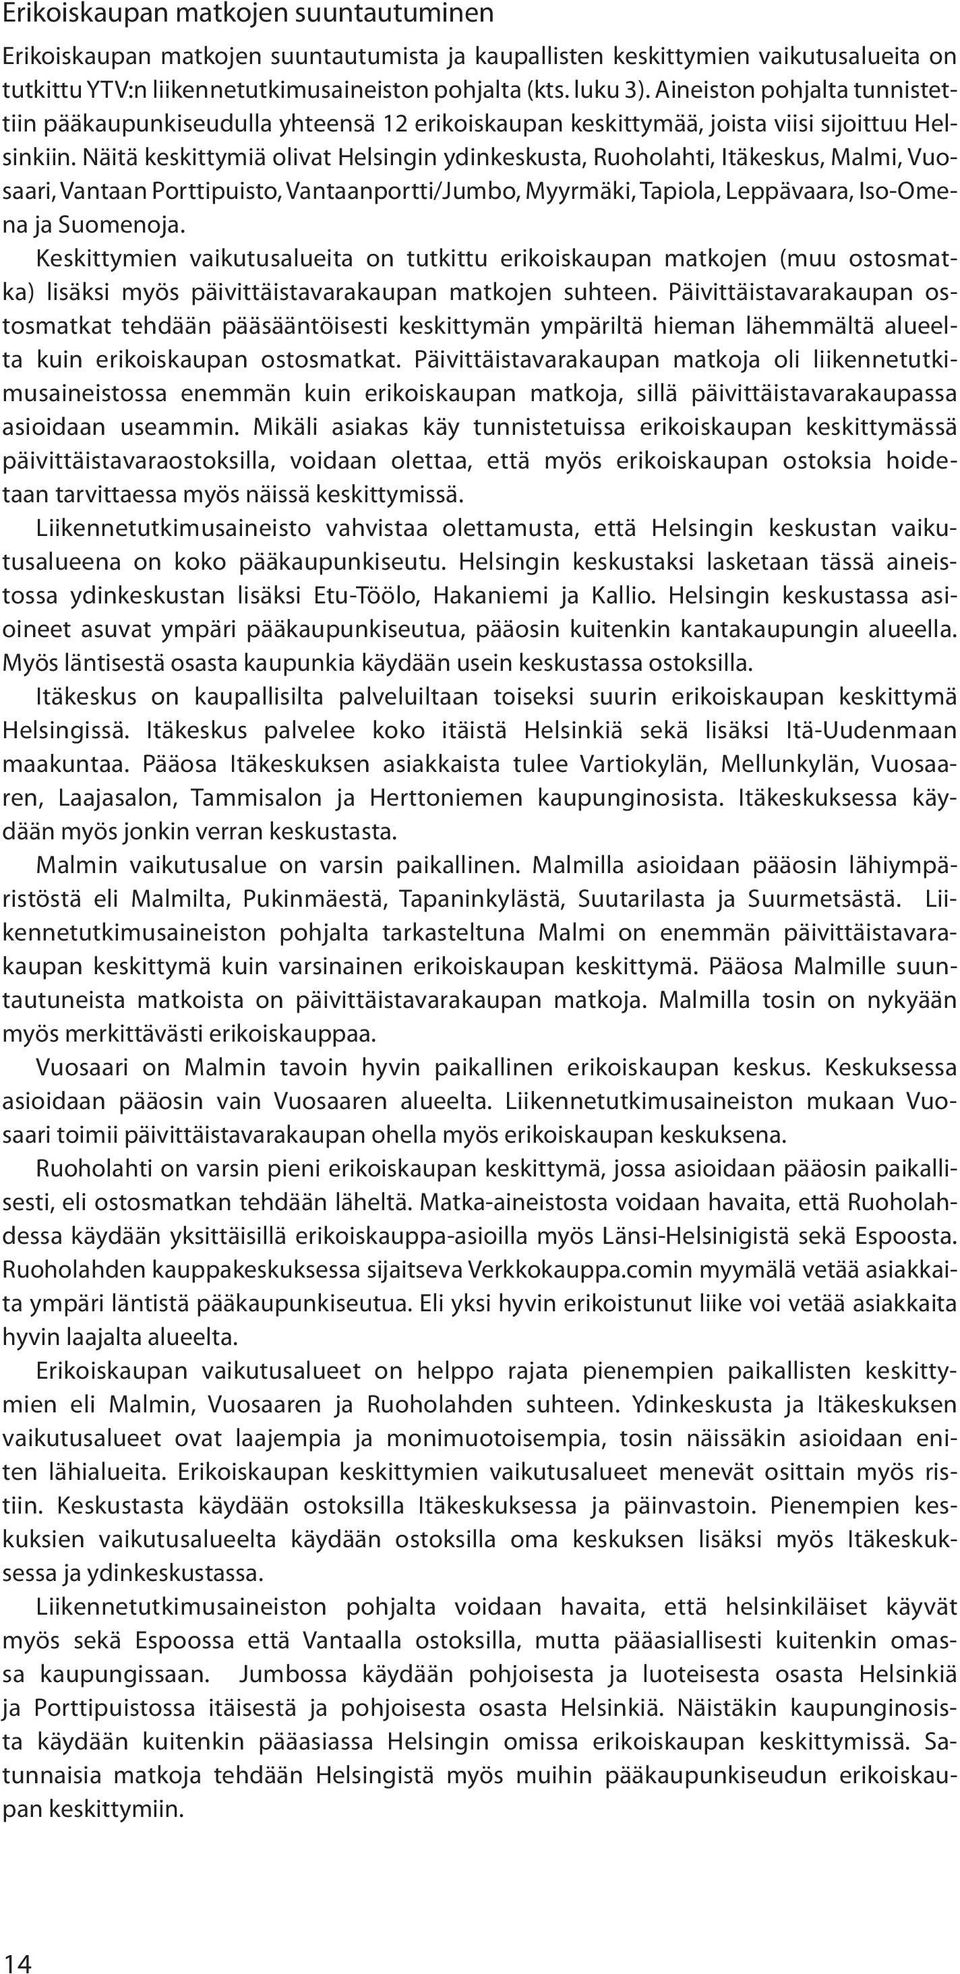 Näitä keskittymiä olivat Helsingin ydinkeskusta, Ruoholahti, Itäkeskus, Malmi, Vuosaari, Vantaan Porttipuisto, Vantaanportti/Jumbo, Myyrmäki, Tapiola, Leppävaara, Iso-Omena ja Suomenoja.